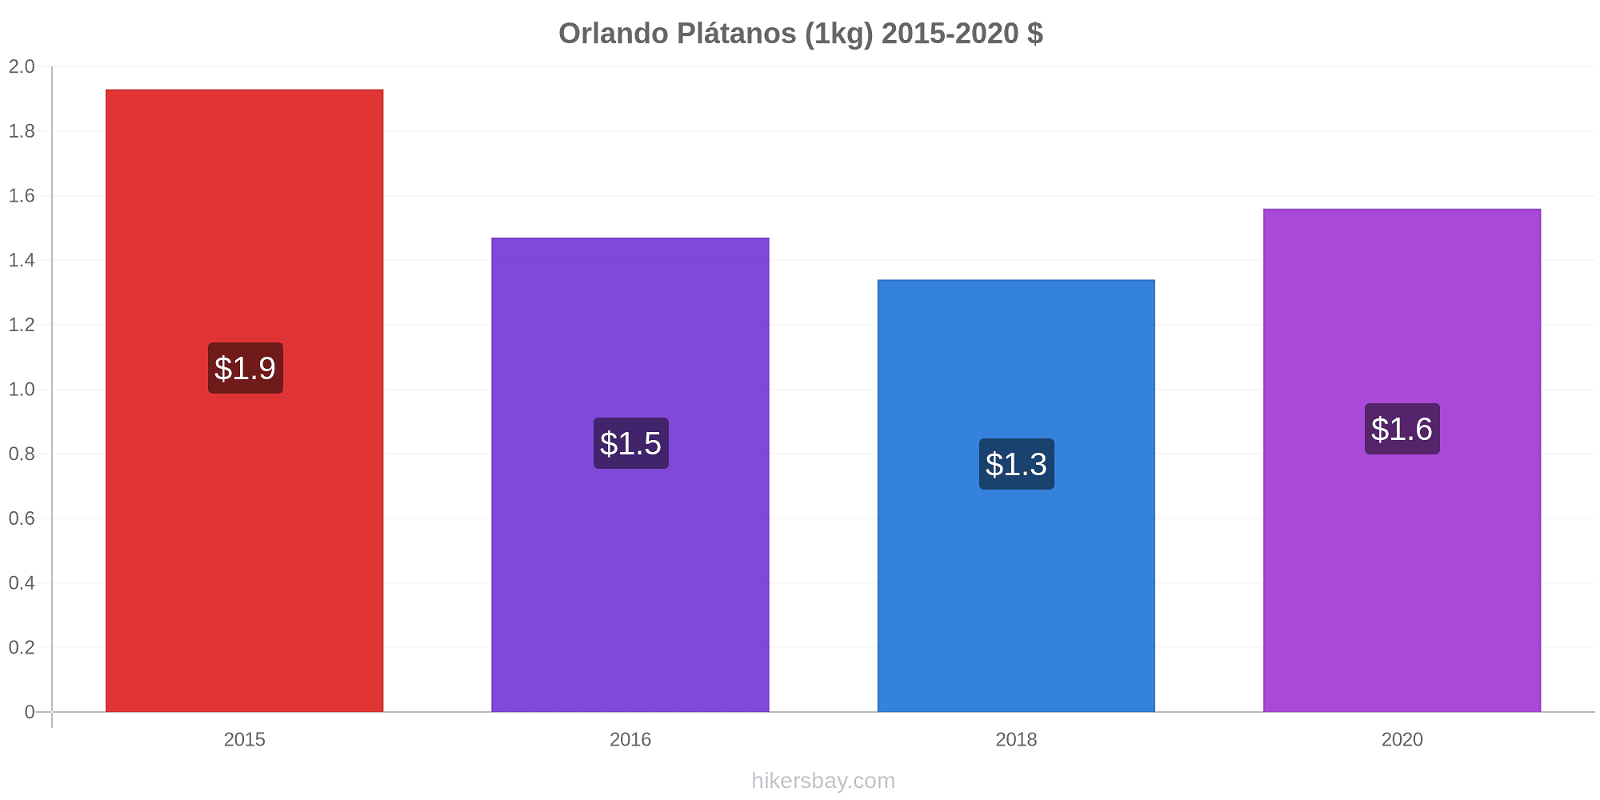 Orlando cambios de precios Plátano (1kg) hikersbay.com